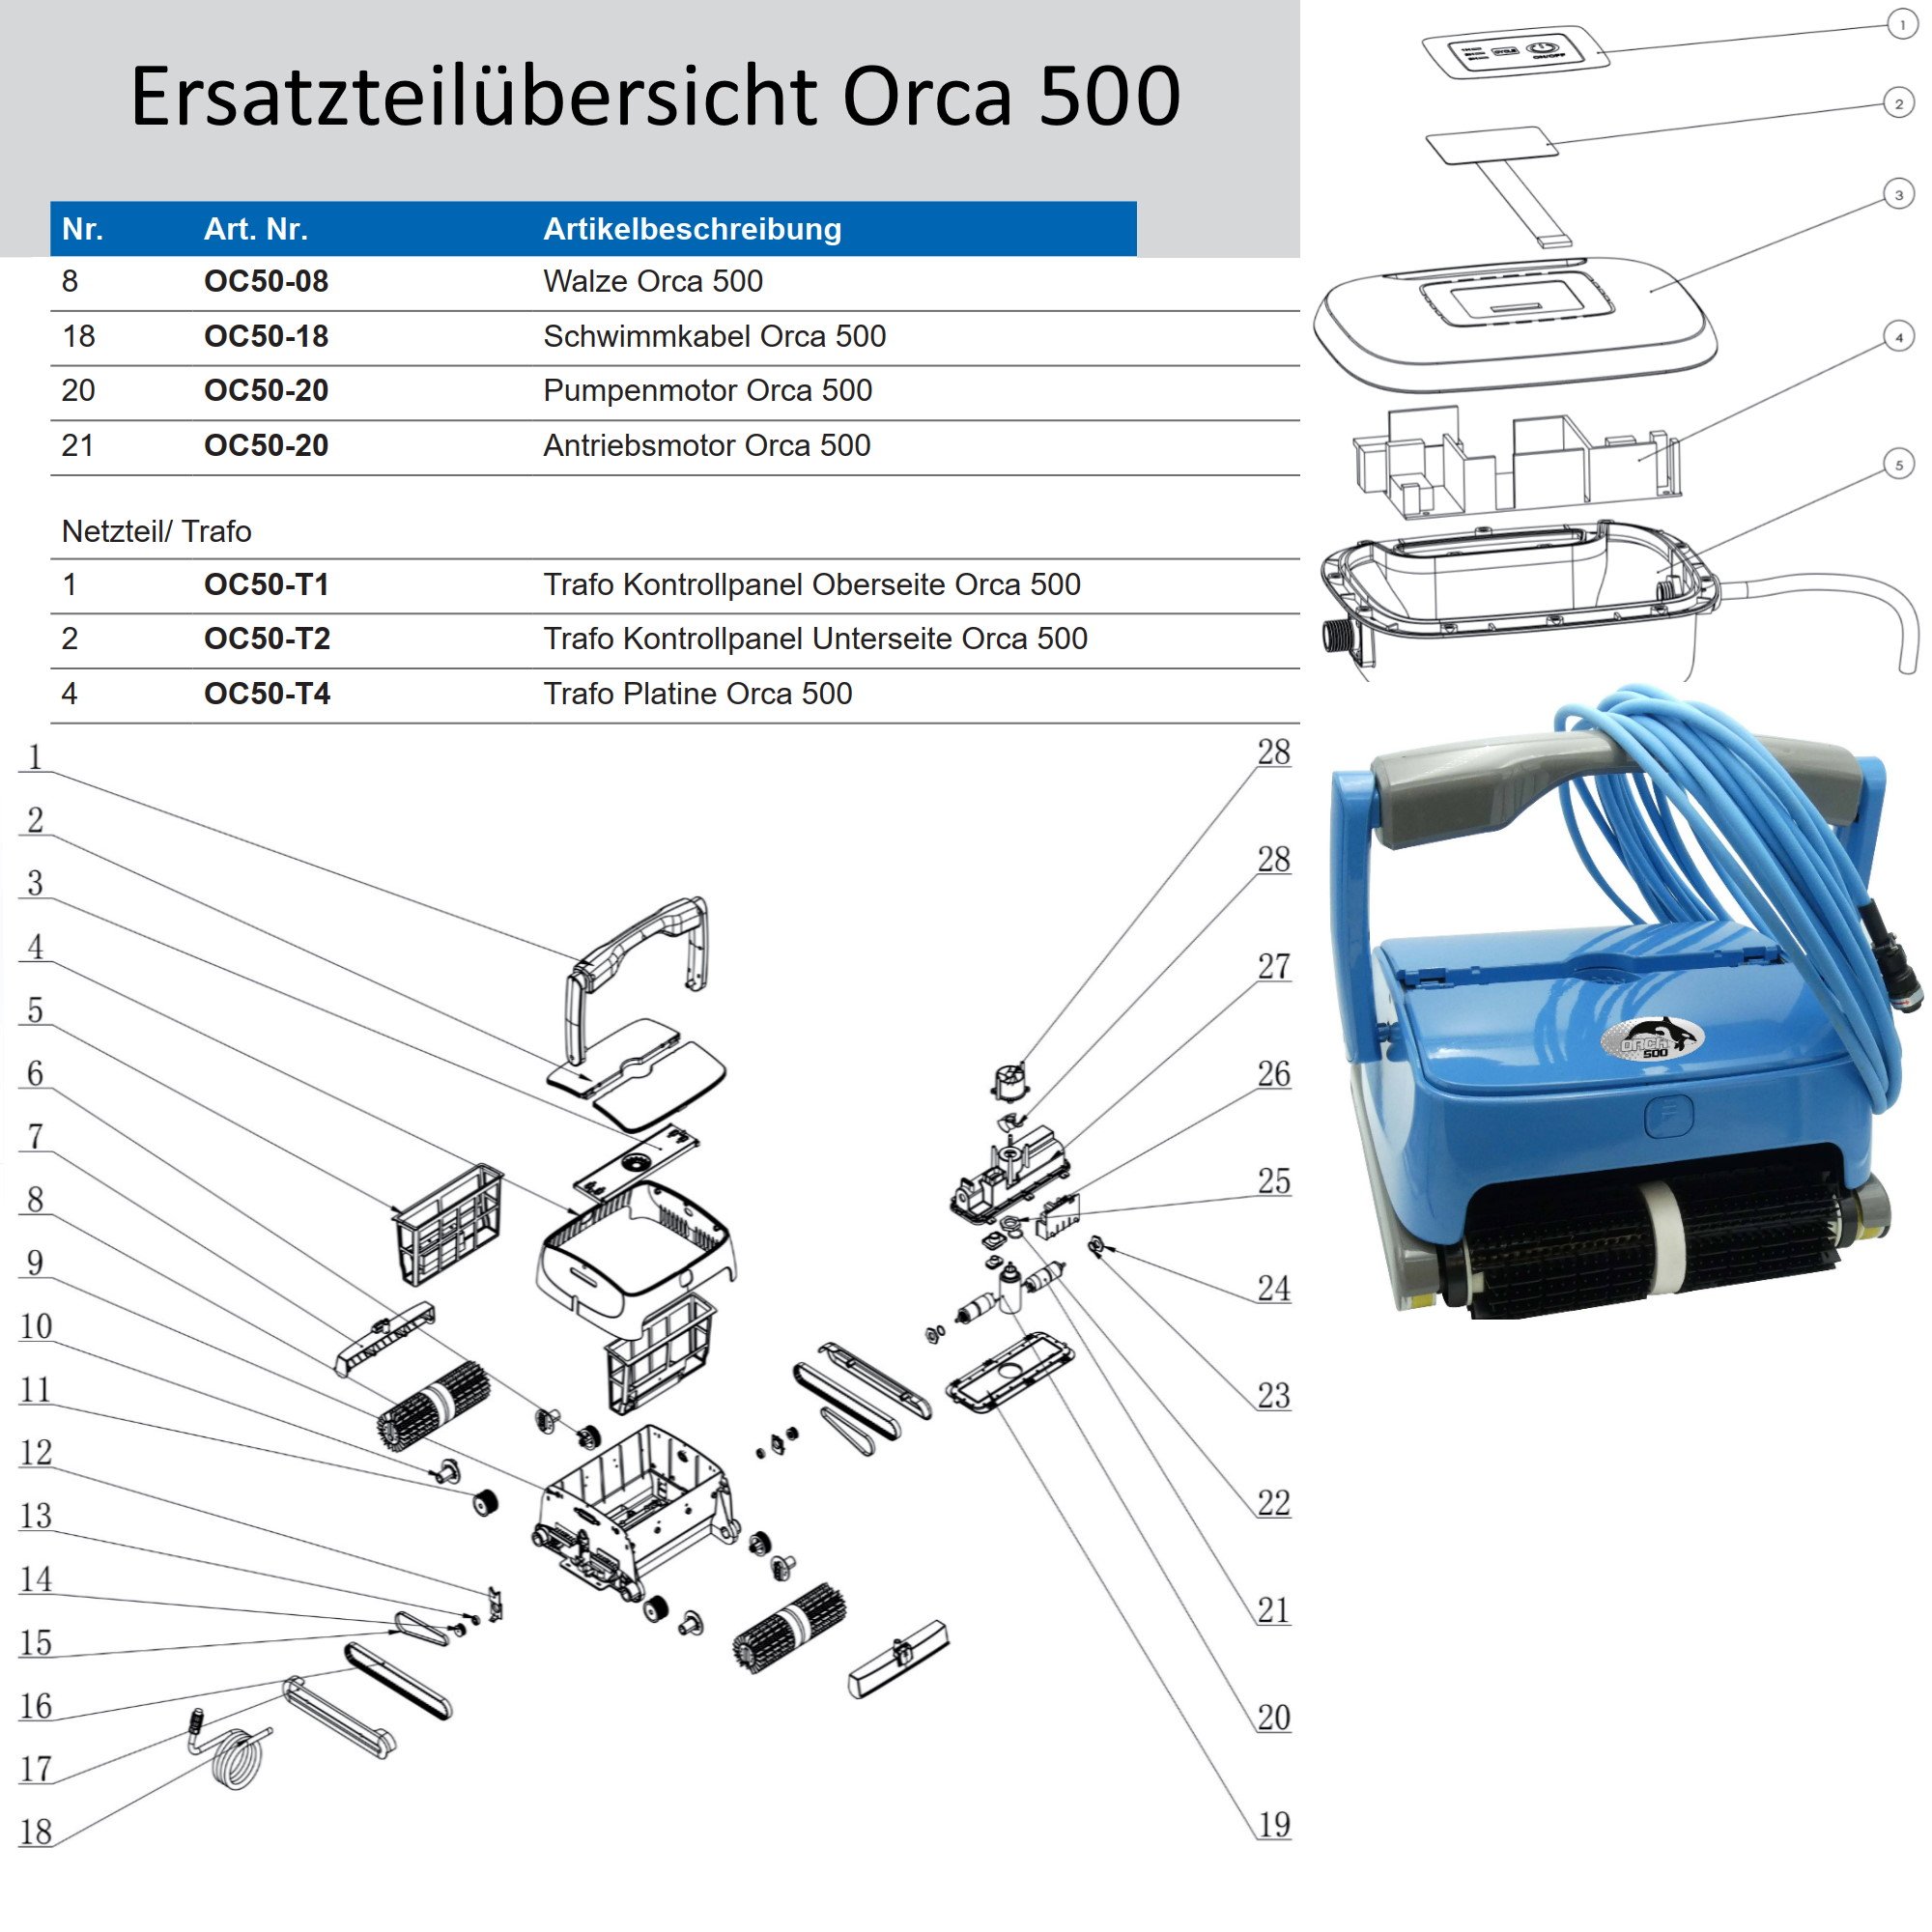 Trafo Kontrollpanel Unterseite Orca 500